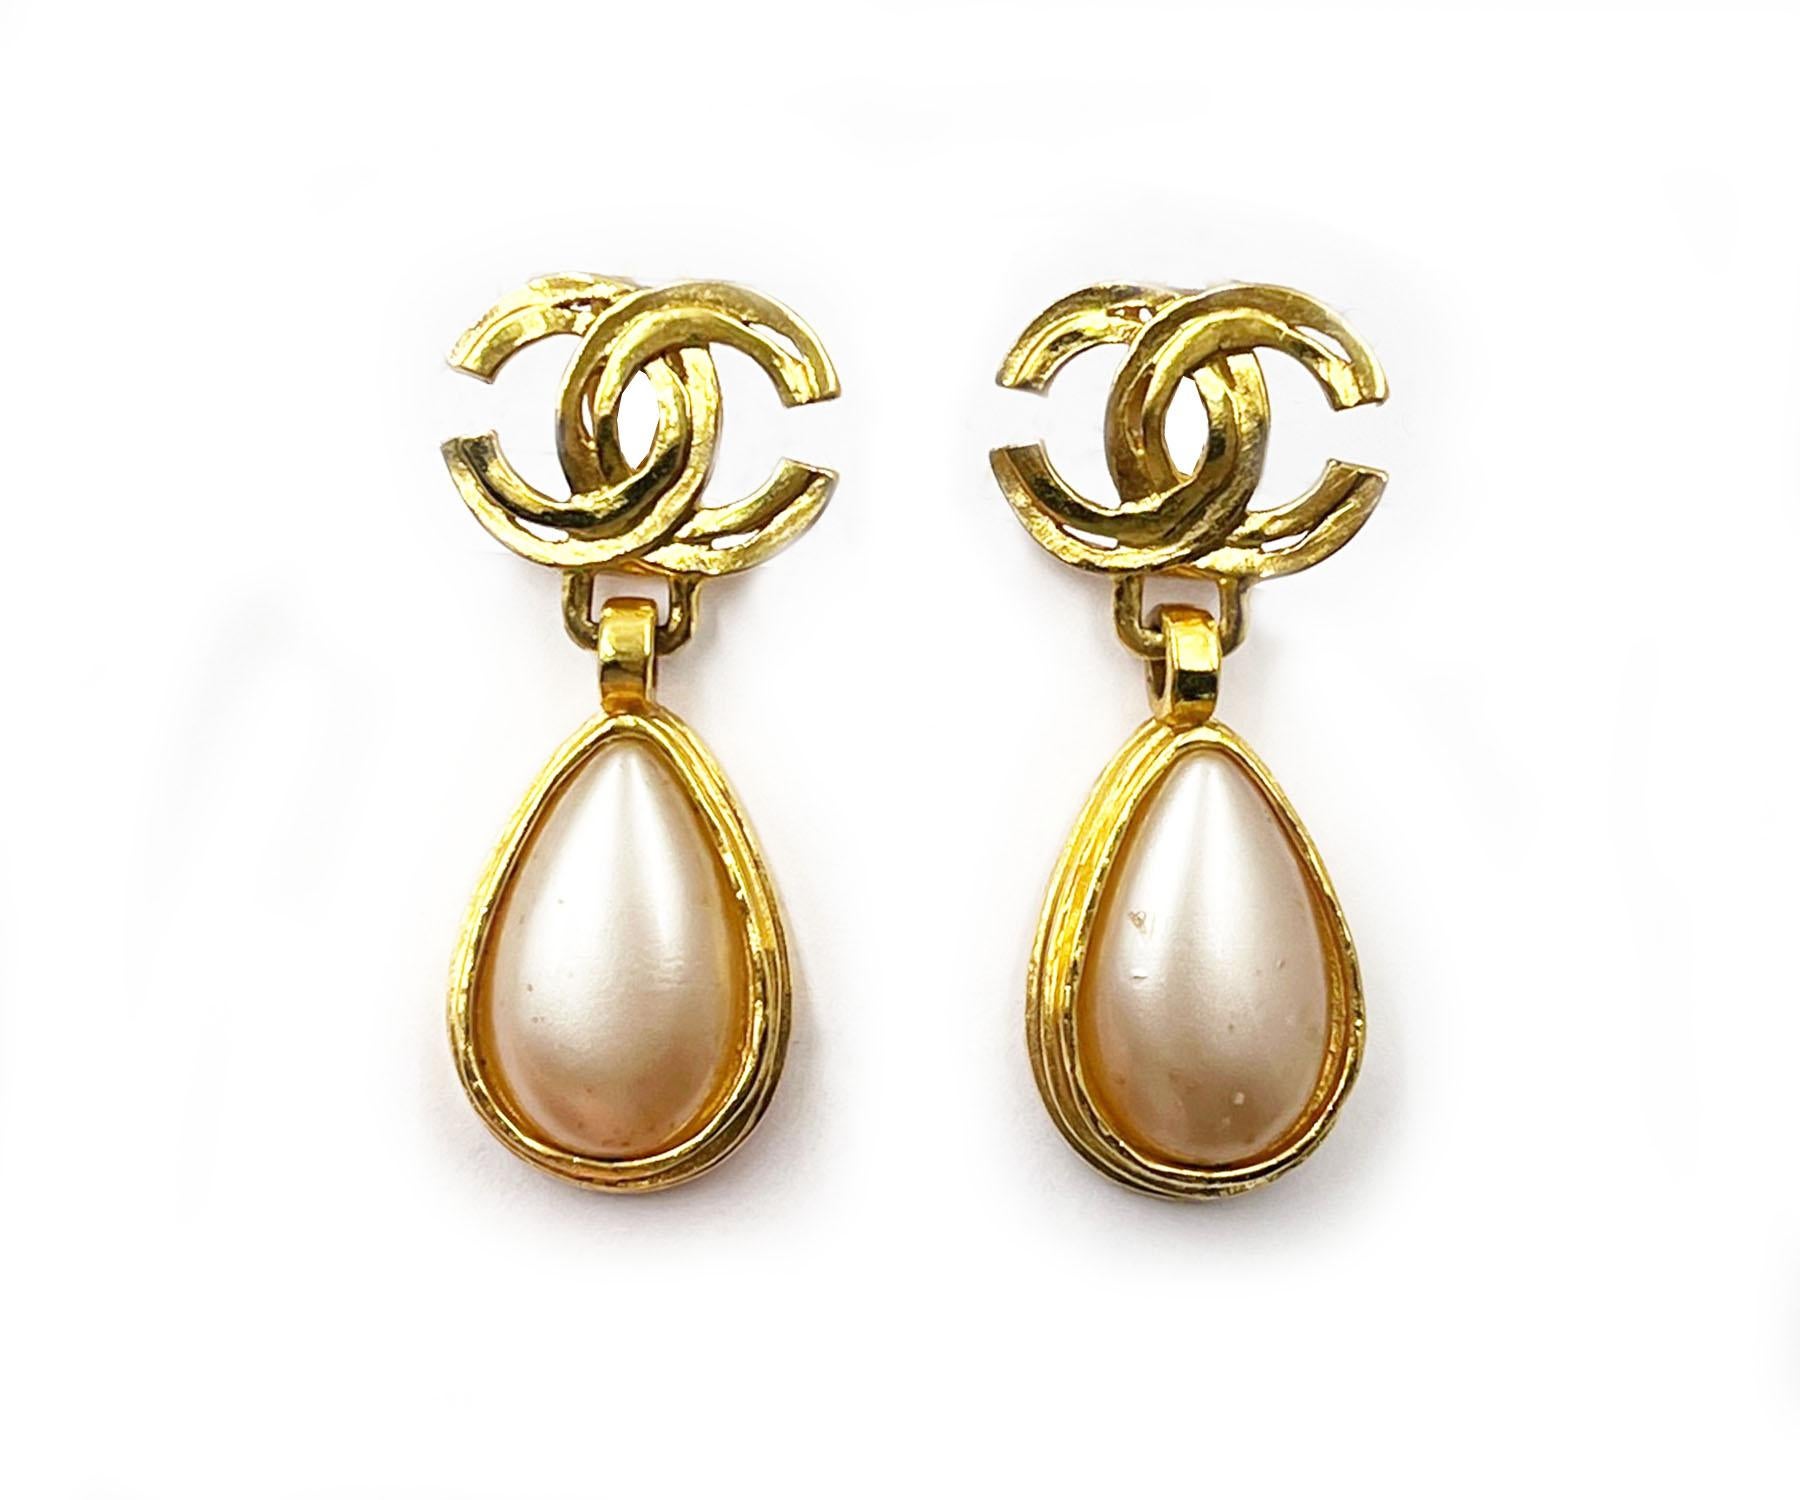 Chanel Vintage Vergoldete CC Perlen Tropfen-Ohrclips mit Ohrclips

* Markiert 97
* Hergestellt in Frankreich
* Hergestellt in Frankreich
* Kommt mit dem Originalkarton 

-Sie ist ungefähr 1,9